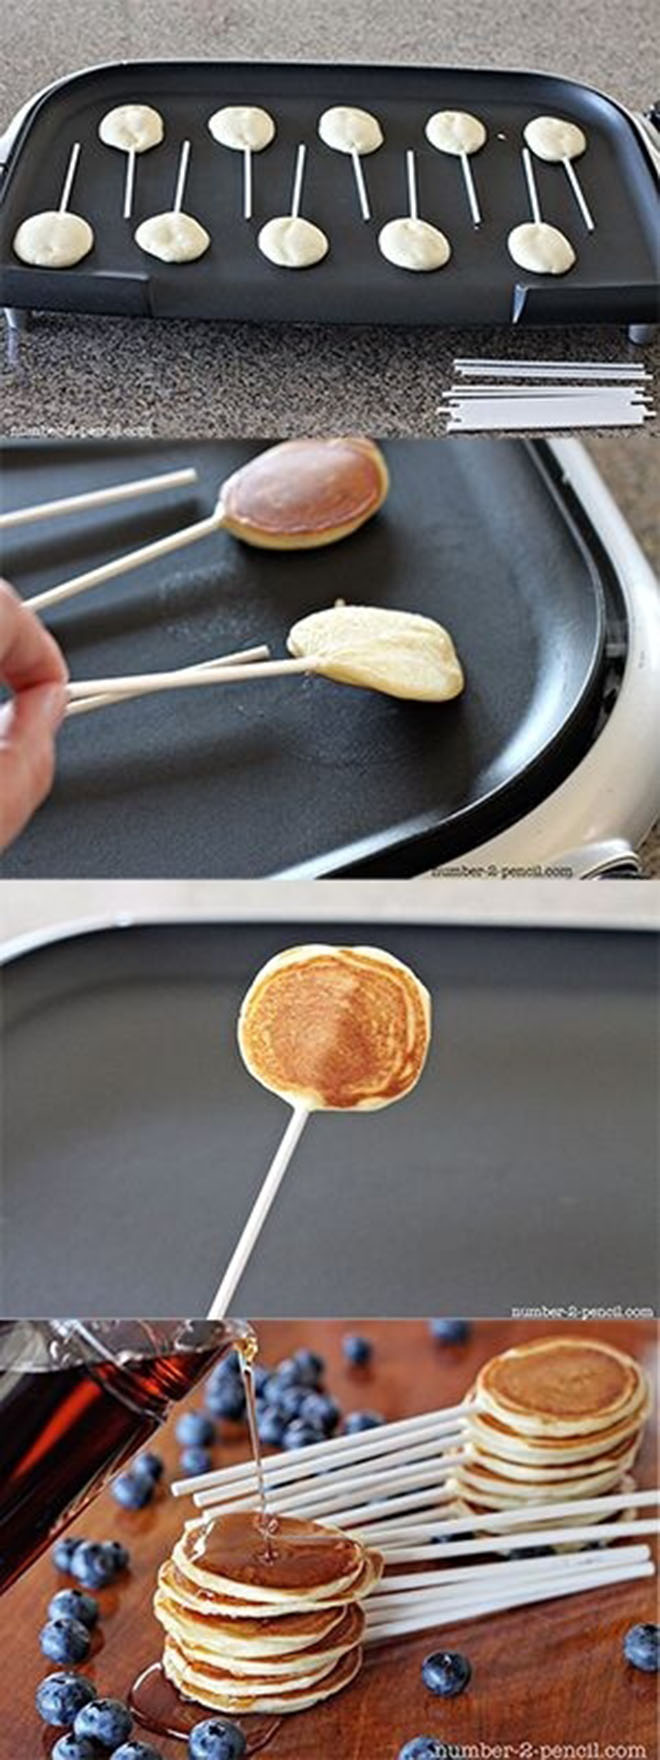 Les pancakes pops